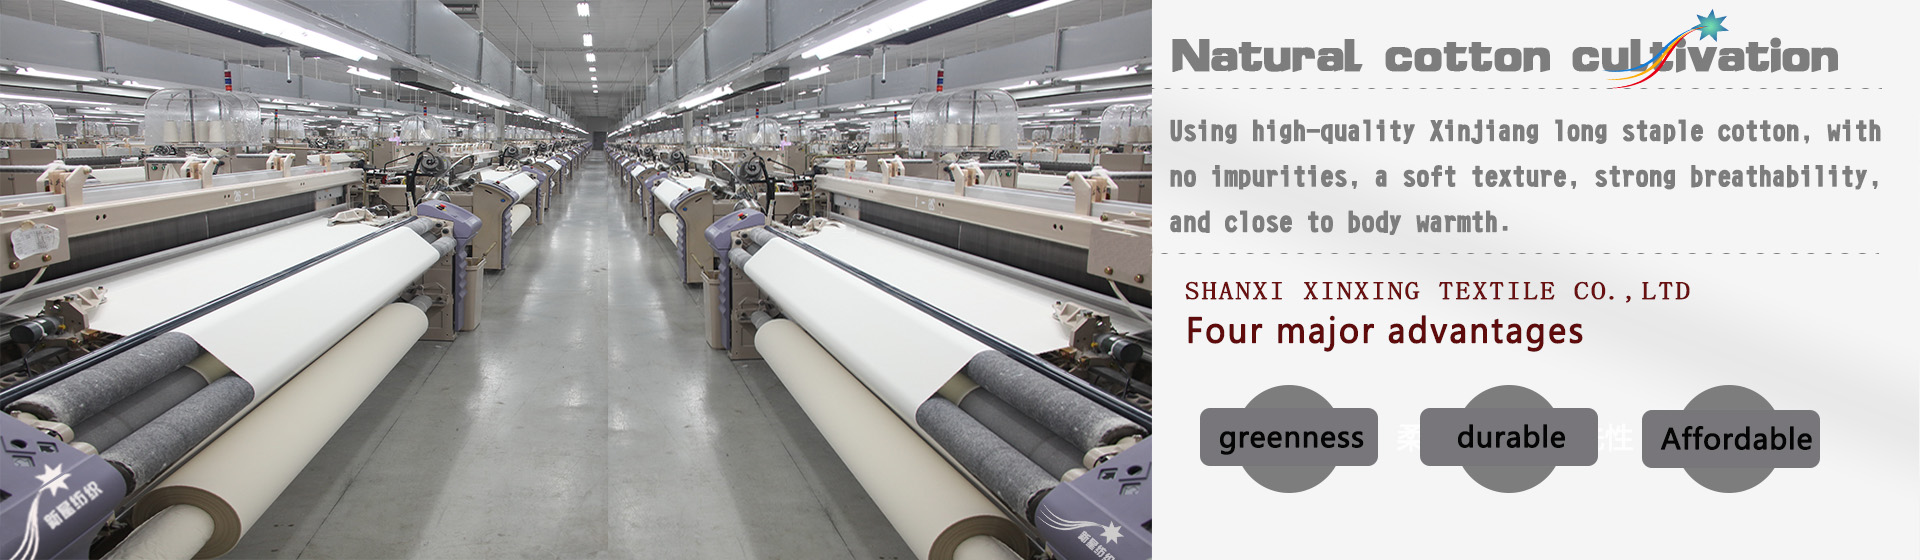 Shaanxi Xinxing Textile Co., Ltd